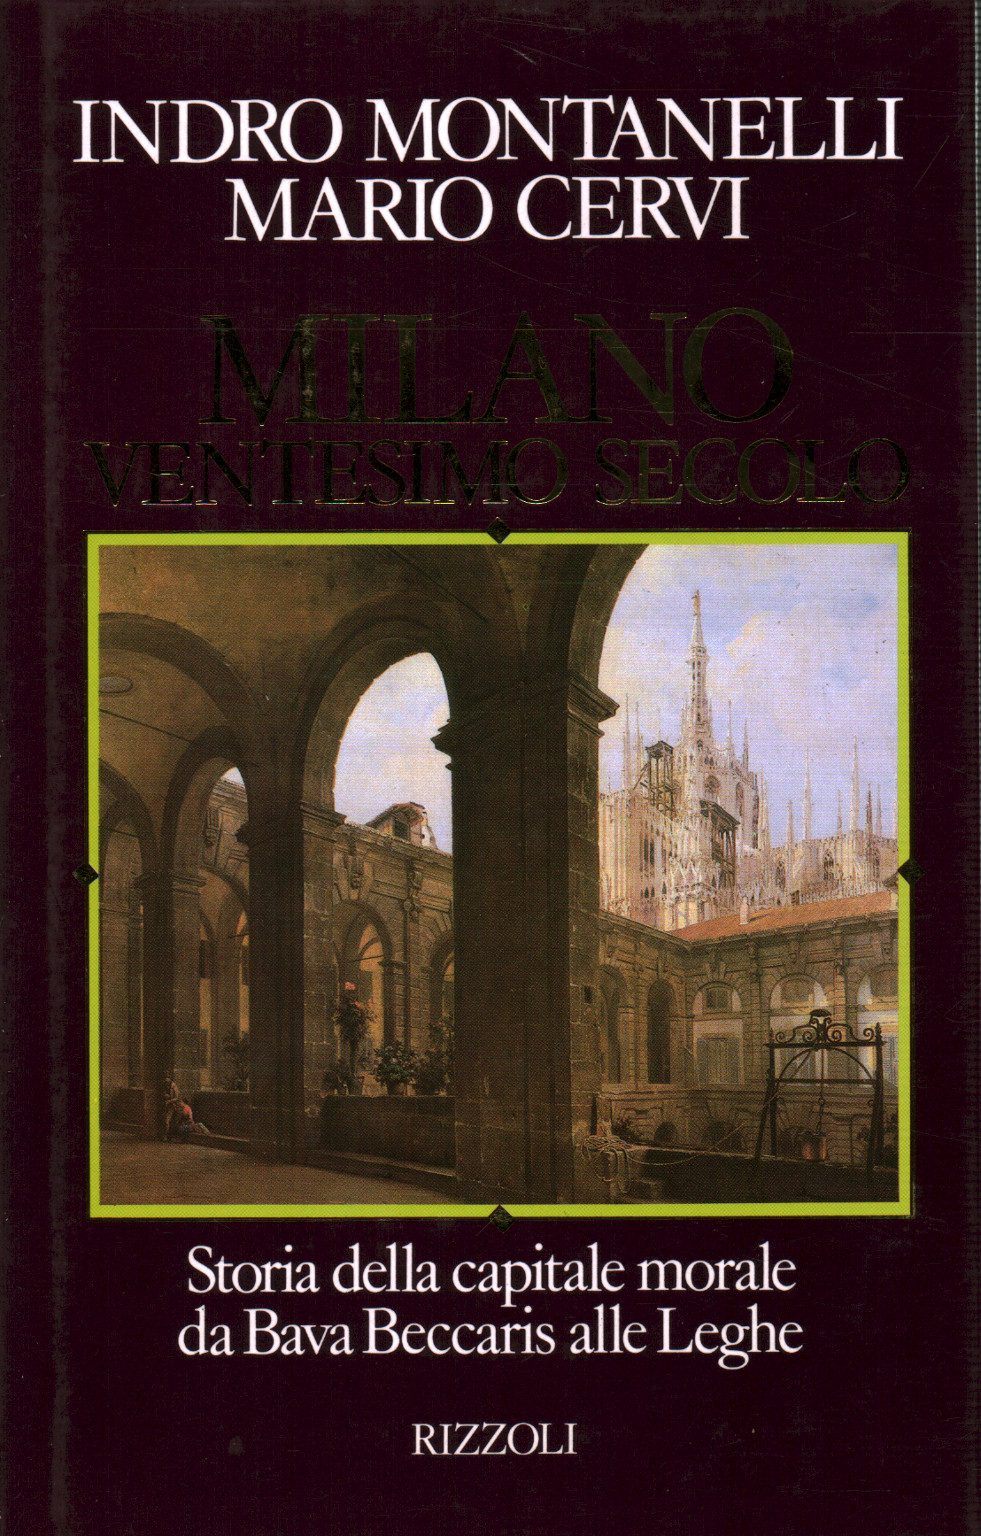 Milan twentieth century, s.a.